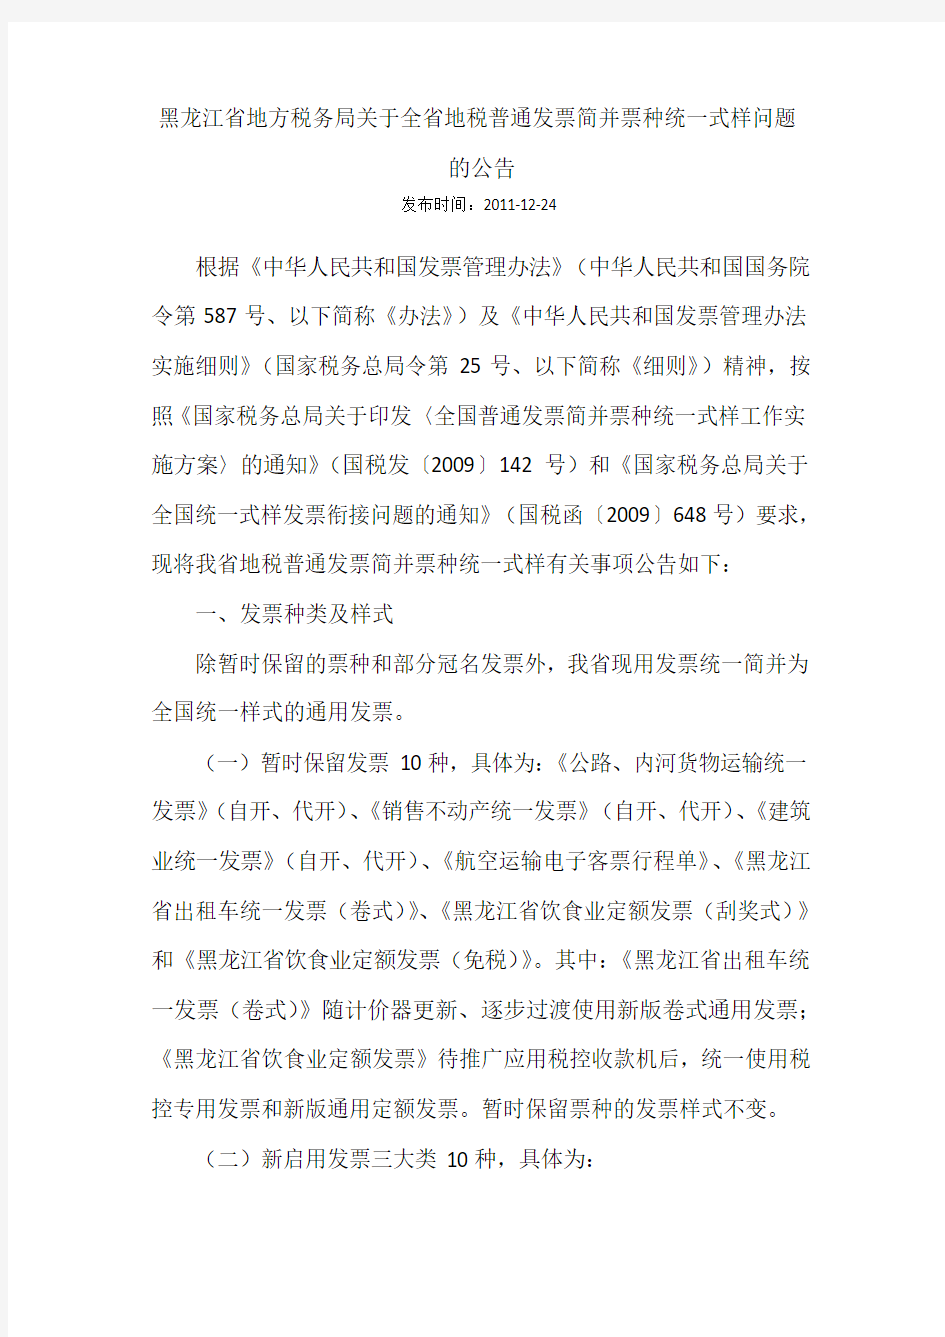 黑龙江省地方税务局关于全省地税普通发票简并票种统一式样问题的公告(1)